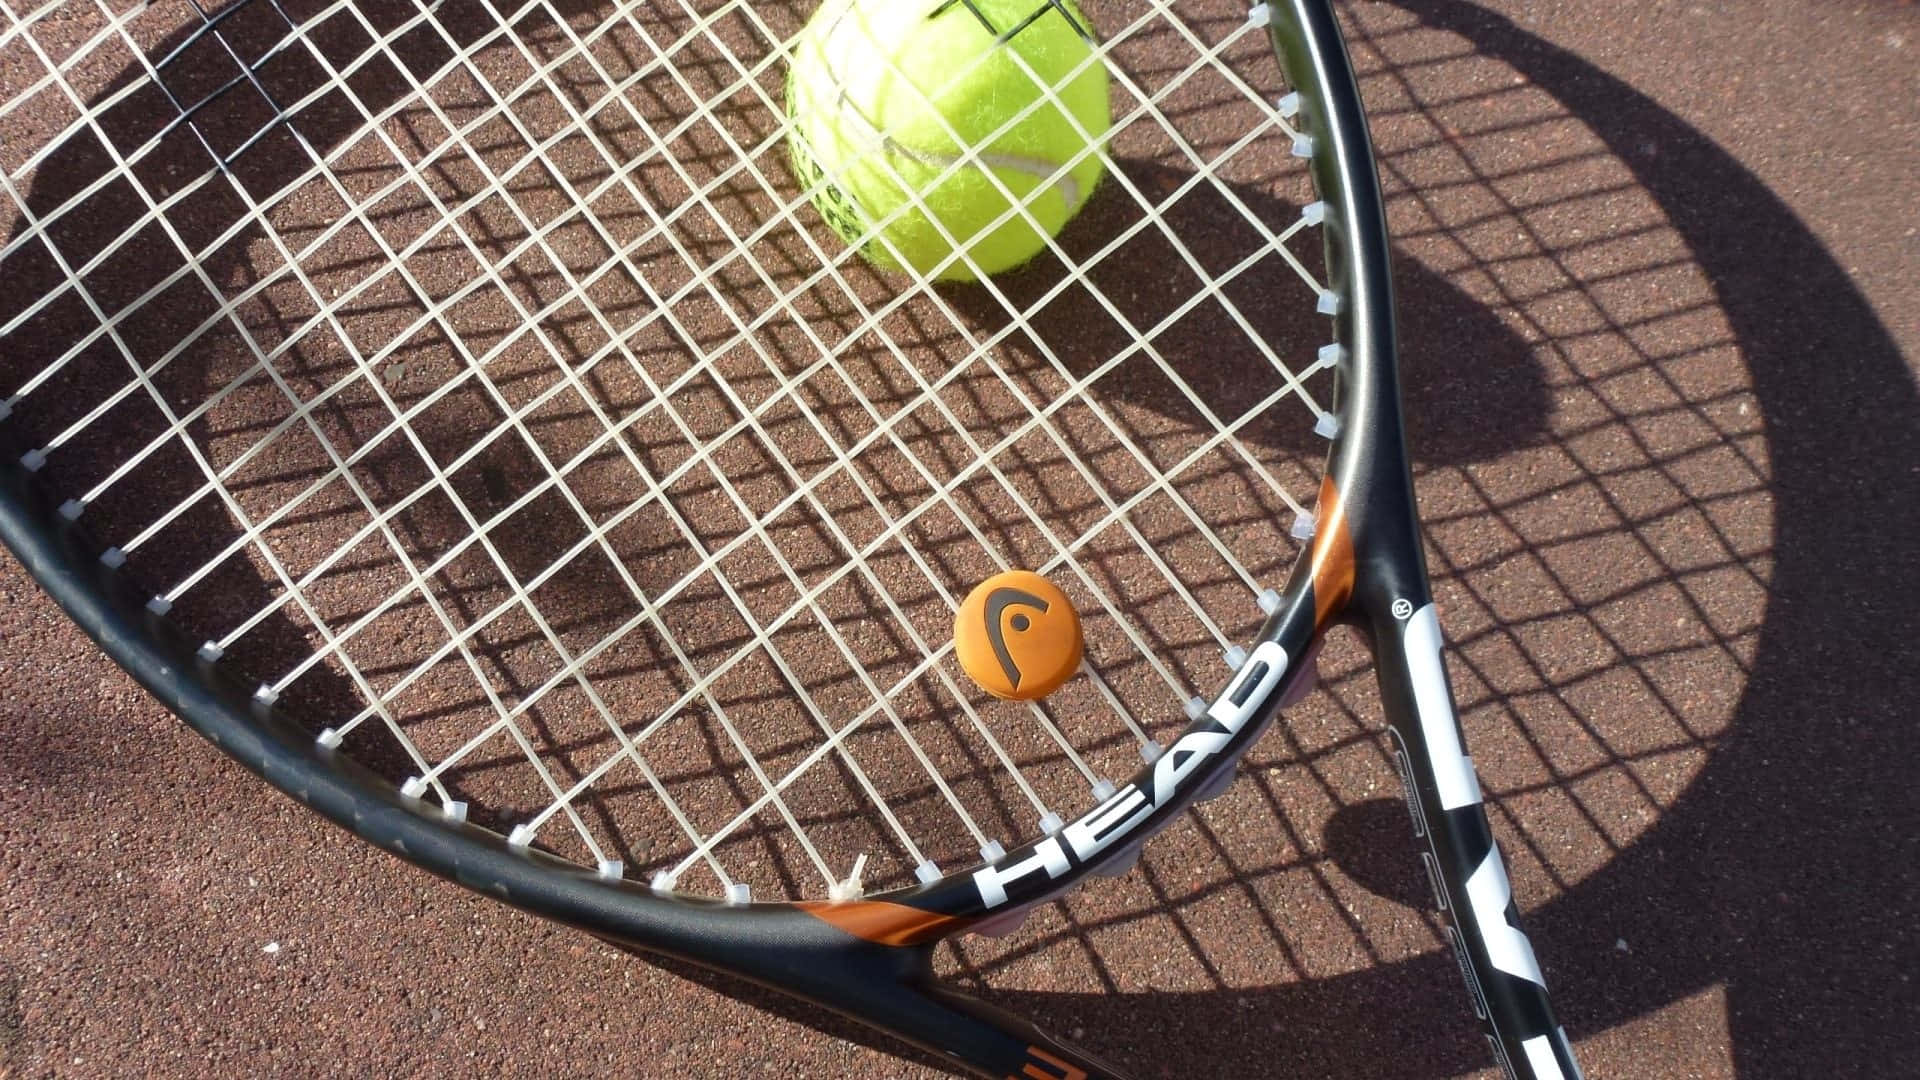 Hd Tennis Gear On Ground Background